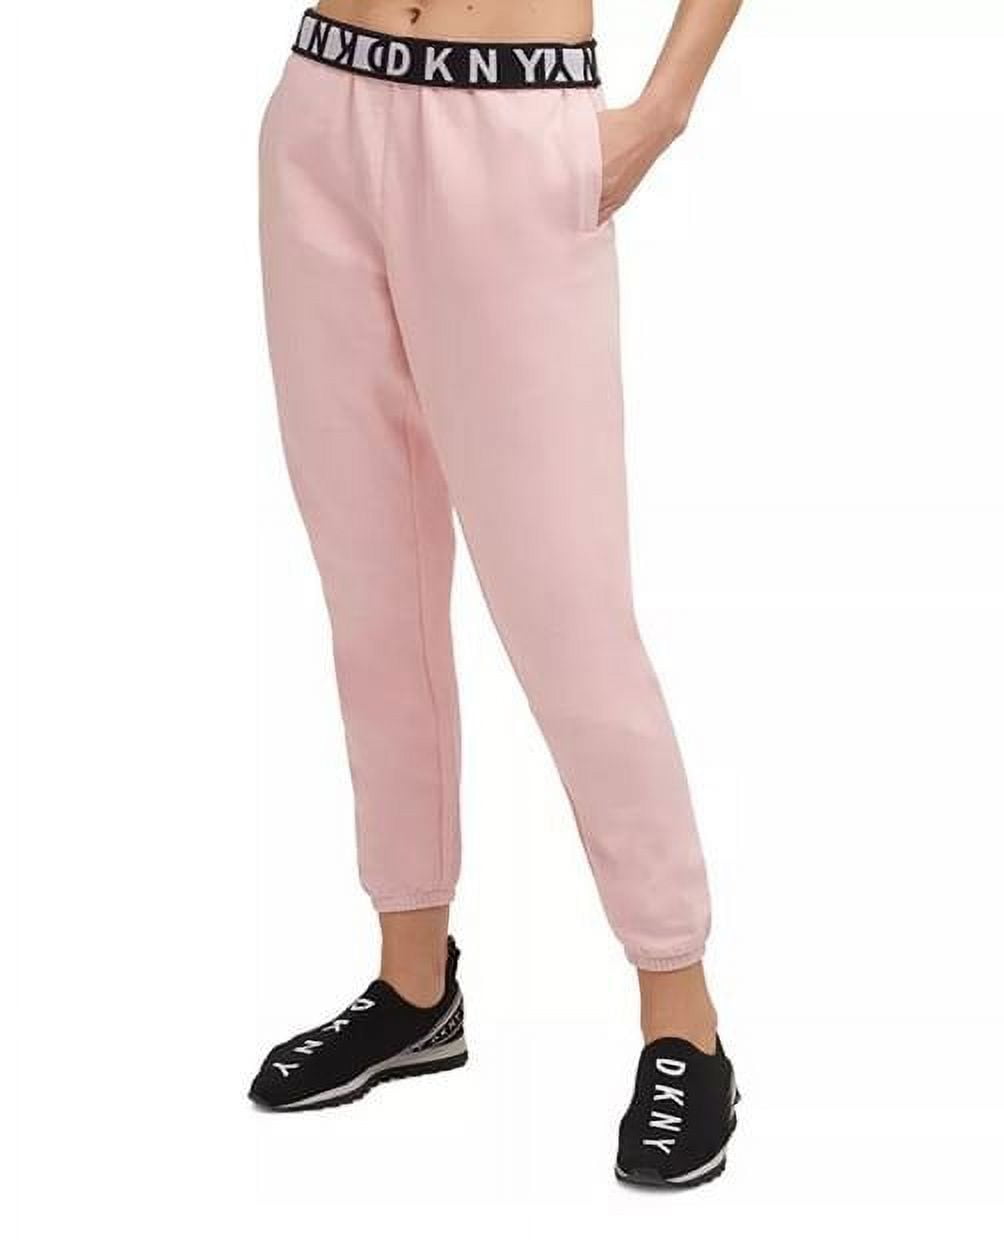 EUC DKNY Kids Girls Logo Sport Athletic Activewear Track Pants XL(14/16)